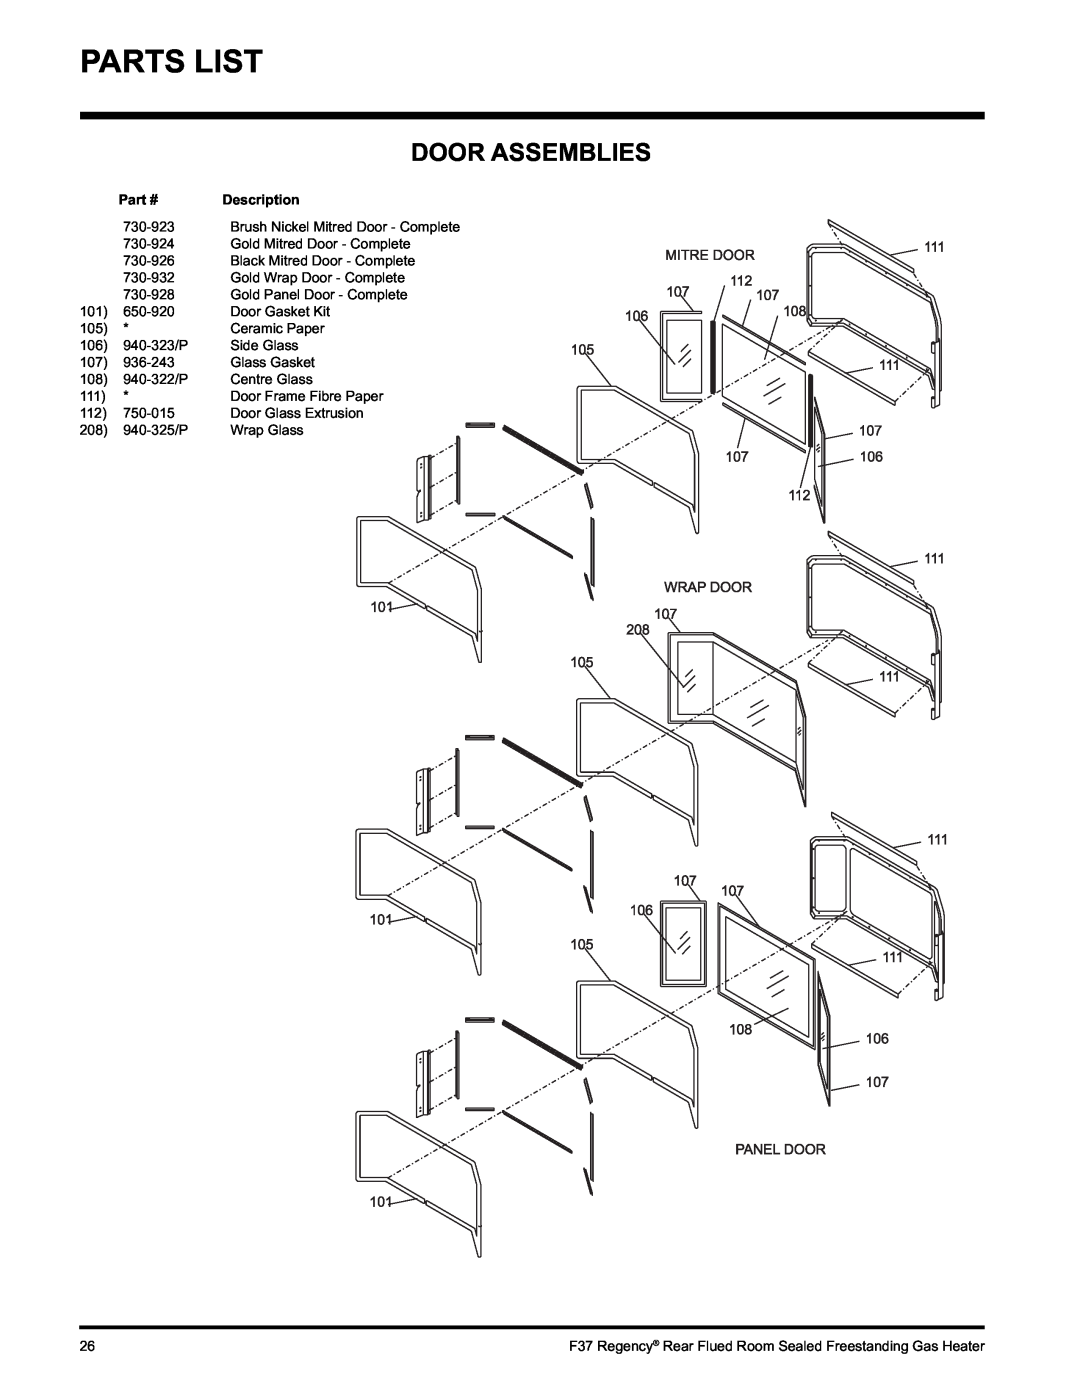 Regency F37-NG, F37-LPG installation manual Door Assemblies, Parts List 